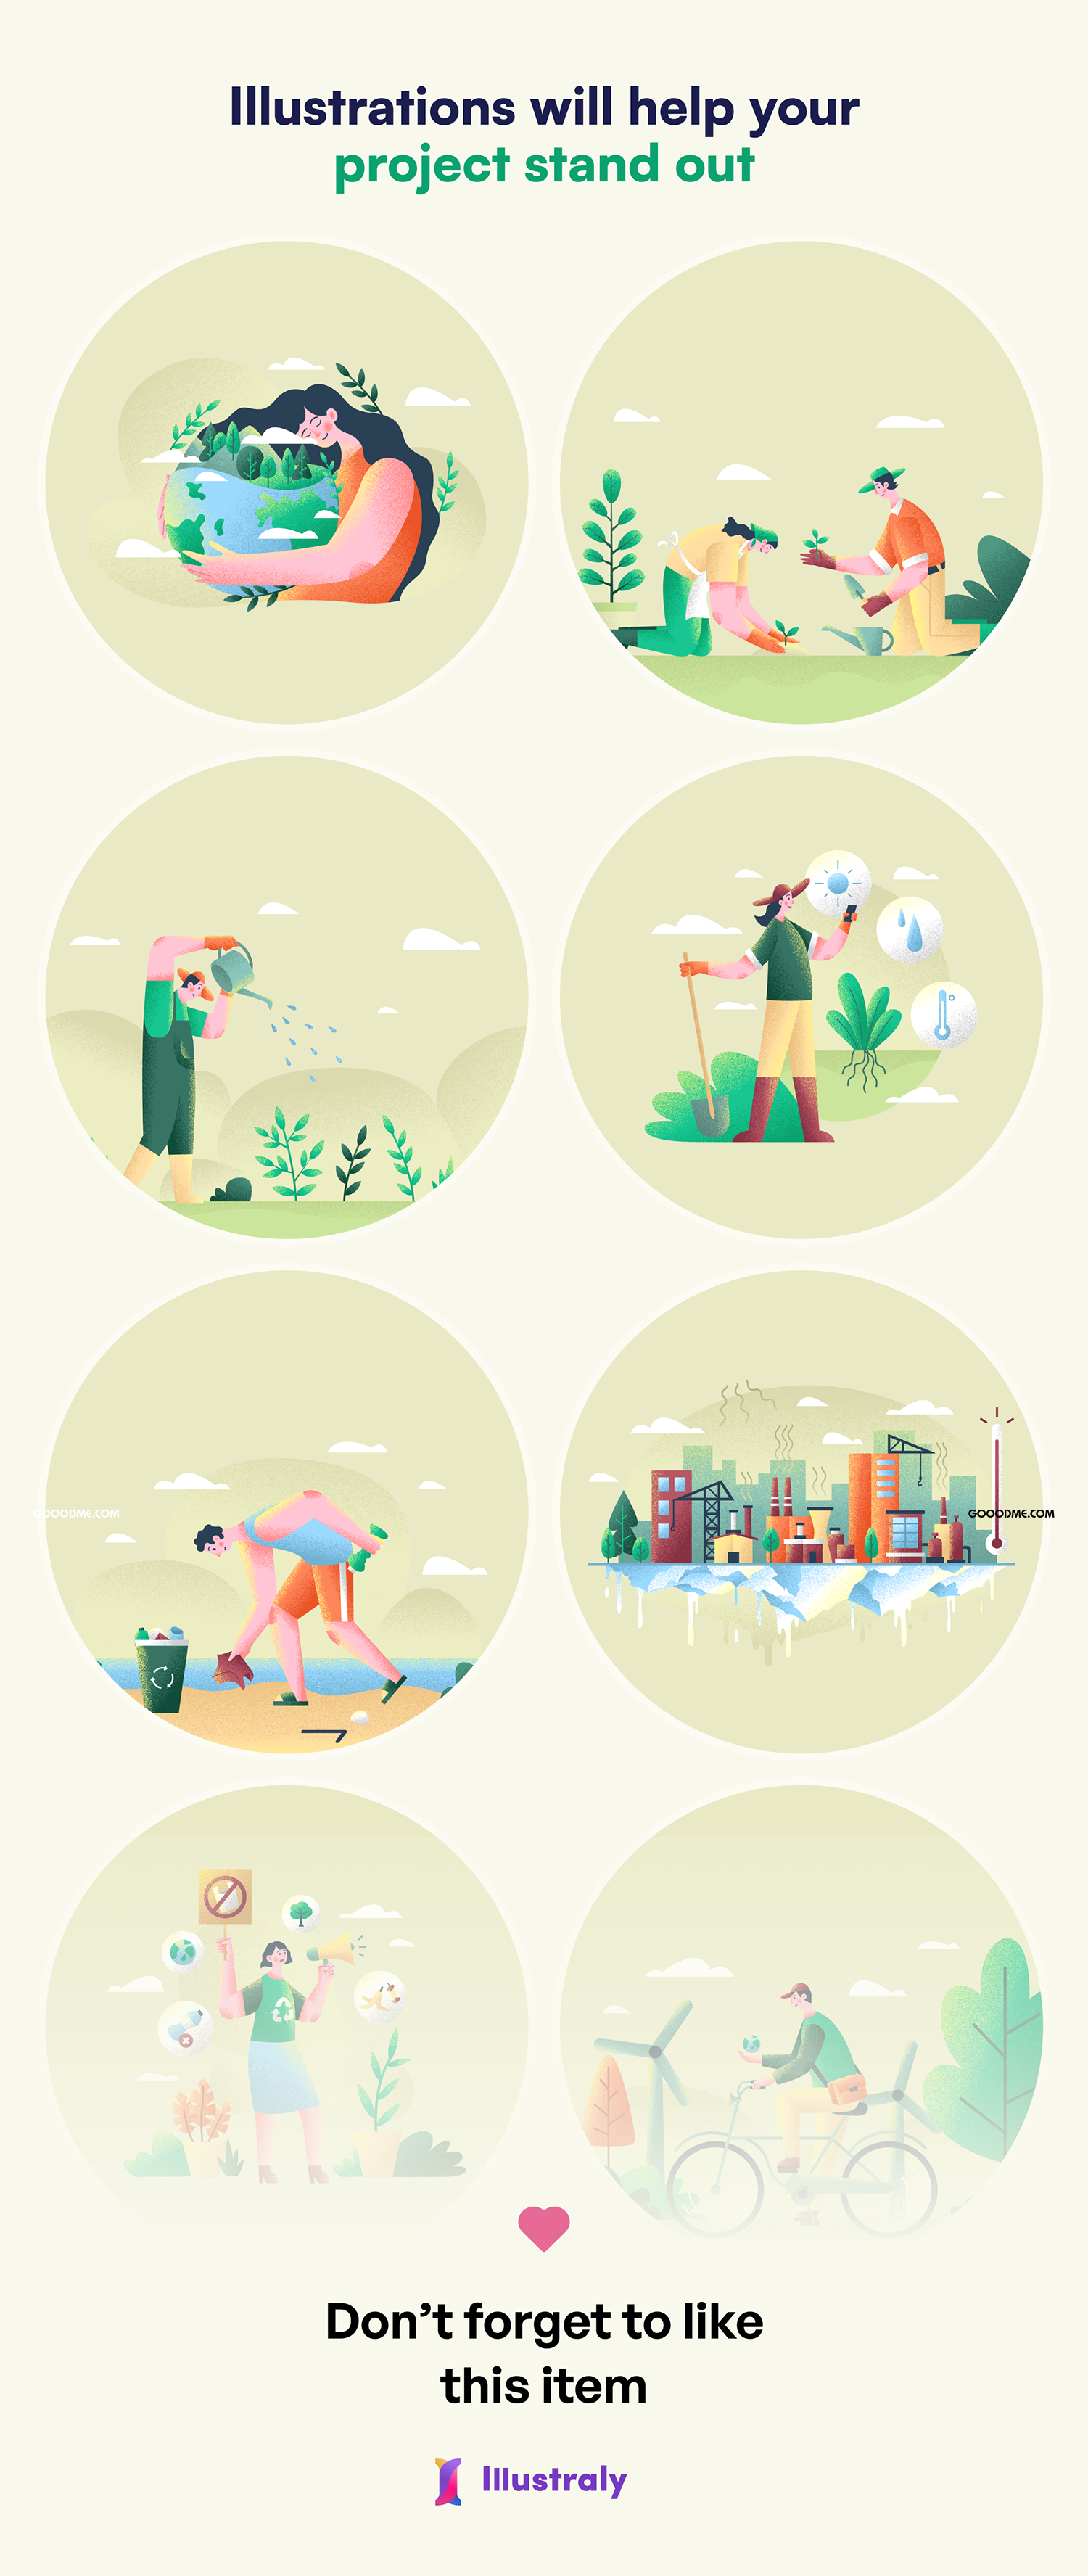 42 现代创意的生态环境环保主题矢量插画素材Ecology – Environment Illustration Set